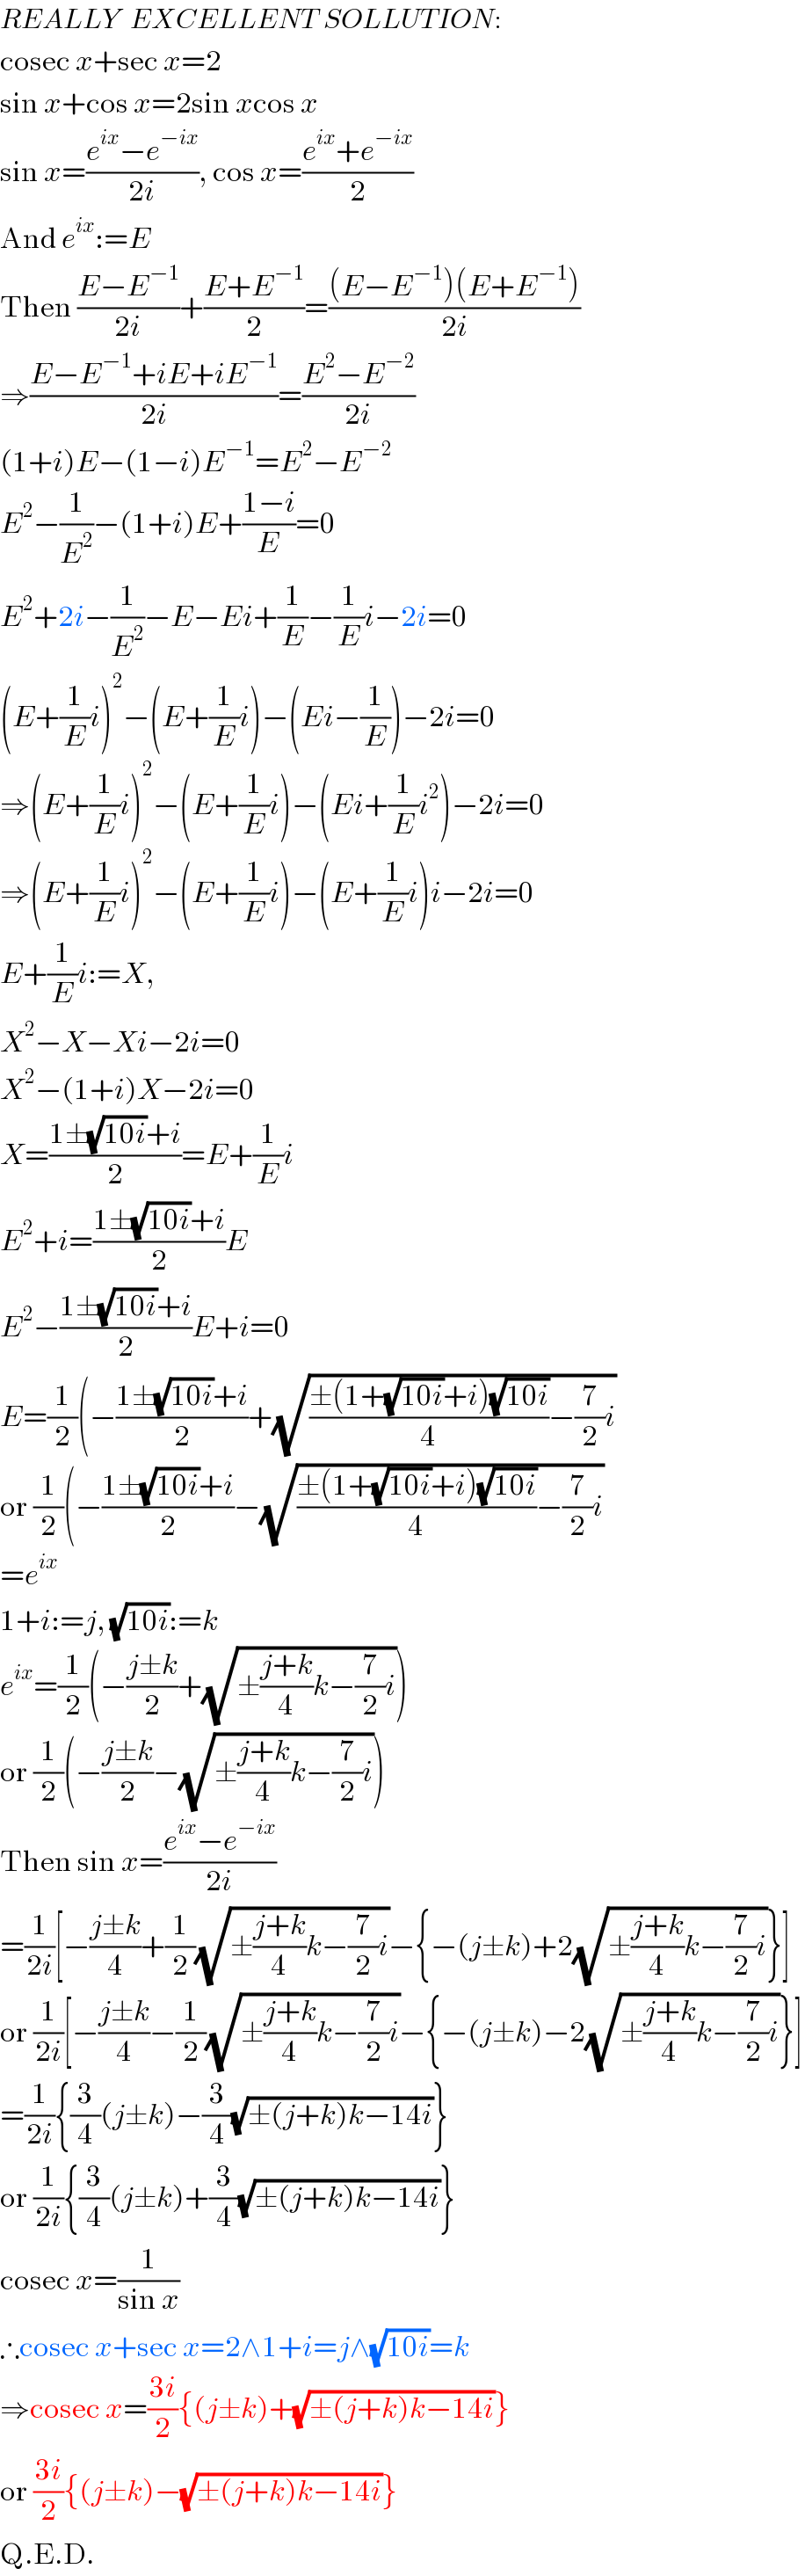 REALLY  EXCELLENT SOLLUTION:  cosec x+sec x=2  sin x+cos x=2sin xcos x  sin x=((e^(ix) −e^(−ix) )/(2i)), cos x=((e^(ix) +e^(−ix) )/2)  And e^(ix) :=E  Then ((E−E^(−1) )/(2i))+((E+E^(−1) )/2)=(((E−E^(−1) )(E+E^(−1) ))/(2i))  ⇒((E−E^(−1) +iE+iE^(−1) )/(2i))=((E^2 −E^(−2) )/(2i))  (1+i)E−(1−i)E^(−1) =E^2 −E^(−2)   E^2 −(1/E^2 )−(1+i)E+((1−i)/E)=0  E^2 +2i−(1/E^2 )−E−Ei+(1/E)−(1/E)i−2i=0  (E+(1/E)i)^2 −(E+(1/E)i)−(Ei−(1/E))−2i=0  ⇒(E+(1/E)i)^2 −(E+(1/E)i)−(Ei+(1/E)i^2 )−2i=0  ⇒(E+(1/E)i)^2 −(E+(1/E)i)−(E+(1/E)i)i−2i=0  E+(1/E)i:=X,  X^2 −X−Xi−2i=0  X^2 −(1+i)X−2i=0  X=((1±(√(10i))+i)/2)=E+(1/E)i  E^2 +i=((1±(√(10i))+i)/2)E  E^2 −((1±(√(10i))+i)/2)E+i=0  E=(1/2)(−((1±(√(10i))+i)/2)+(√(((±(1+(√(10i))+i)(√(10i)))/4)−(7/2)i))  or (1/2)(−((1±(√(10i))+i)/2)−(√(((±(1+(√(10i))+i)(√(10i)))/4)−(7/2)i))  =e^(ix)   1+i:=j, (√(10i)):=k  e^(ix) =(1/2)(−((j±k)/2)+(√(±((j+k)/4)k−(7/2)i)))  or (1/2)(−((j±k)/2)−(√(±((j+k)/4)k−(7/2)i)))  Then sin x=((e^(ix) −e^(−ix) )/(2i))  =(1/(2i))[−((j±k)/4)+(1/2)(√(±((j+k)/4)k−(7/2)i))−{−(j±k)+2(√(±((j+k)/4)k−(7/2)i))}]  or (1/(2i))[−((j±k)/4)−(1/2)(√(±((j+k)/4)k−(7/2)i))−{−(j±k)−2(√(±((j+k)/4)k−(7/2)i))}]  =(1/(2i)){(3/4)(j±k)−(3/4)(√(±(j+k)k−14i))}  or (1/(2i)){(3/4)(j±k)+(3/4)(√(±(j+k)k−14i))}  cosec x=(1/(sin x))  ∴cosec x+sec x=2∧1+i=j∧(√(10i))=k  ⇒cosec x=((3i)/2){(j±k)+(√(±(j+k)k−14i))}  or ((3i)/2){(j±k)−(√(±(j+k)k−14i))}  Q.E.D.  